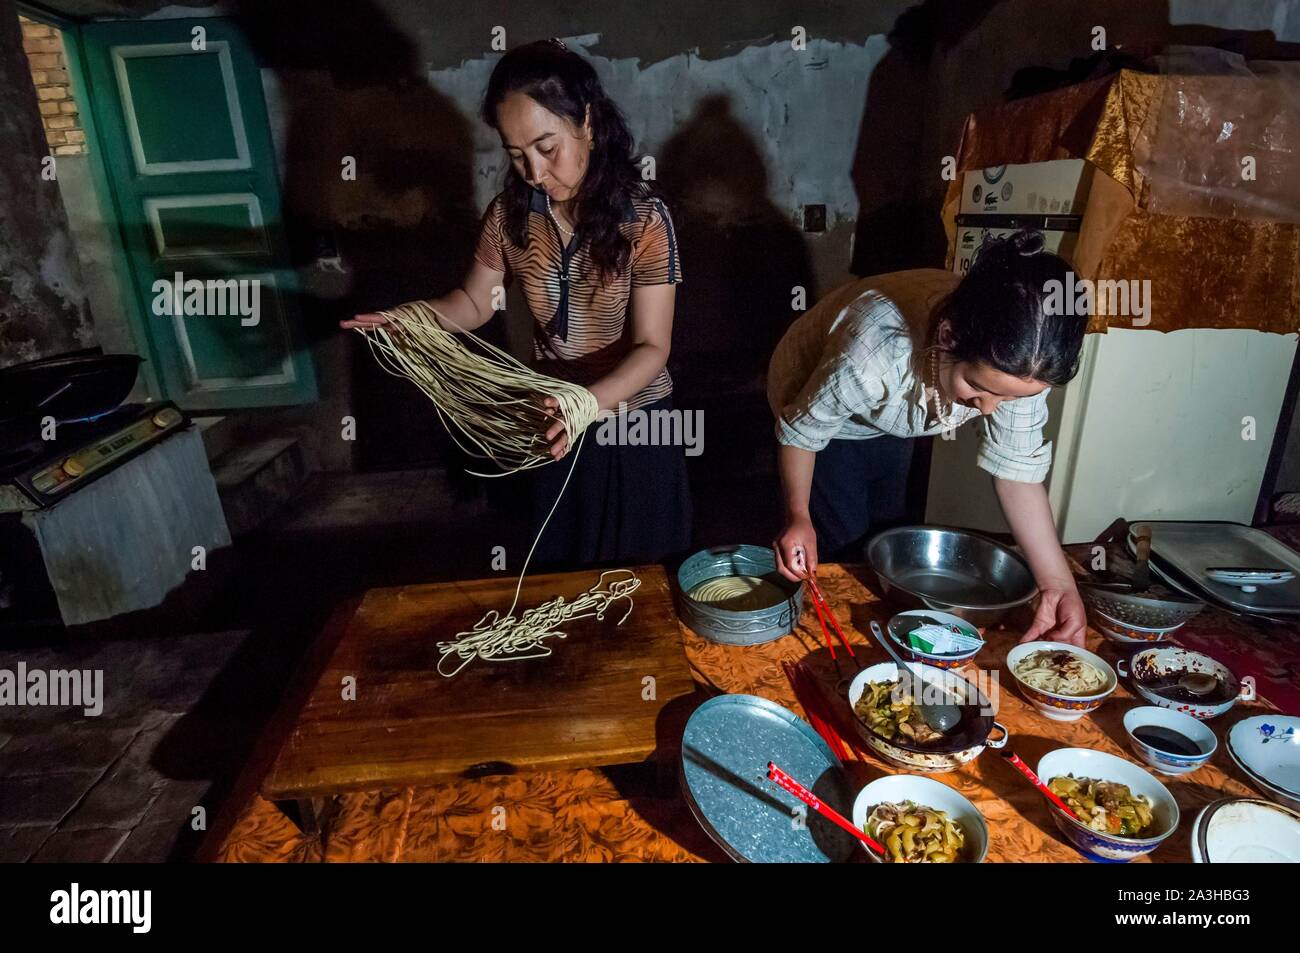 China, Xinjiang autonome Region, Kashgar, in einem Uigurischen Familie, die Vorbereitung der hausgemachte Nudeln, für das nationale Gericht auf der Basis von Nudeln, Hammel Fleisch und Gemüse Stockfoto